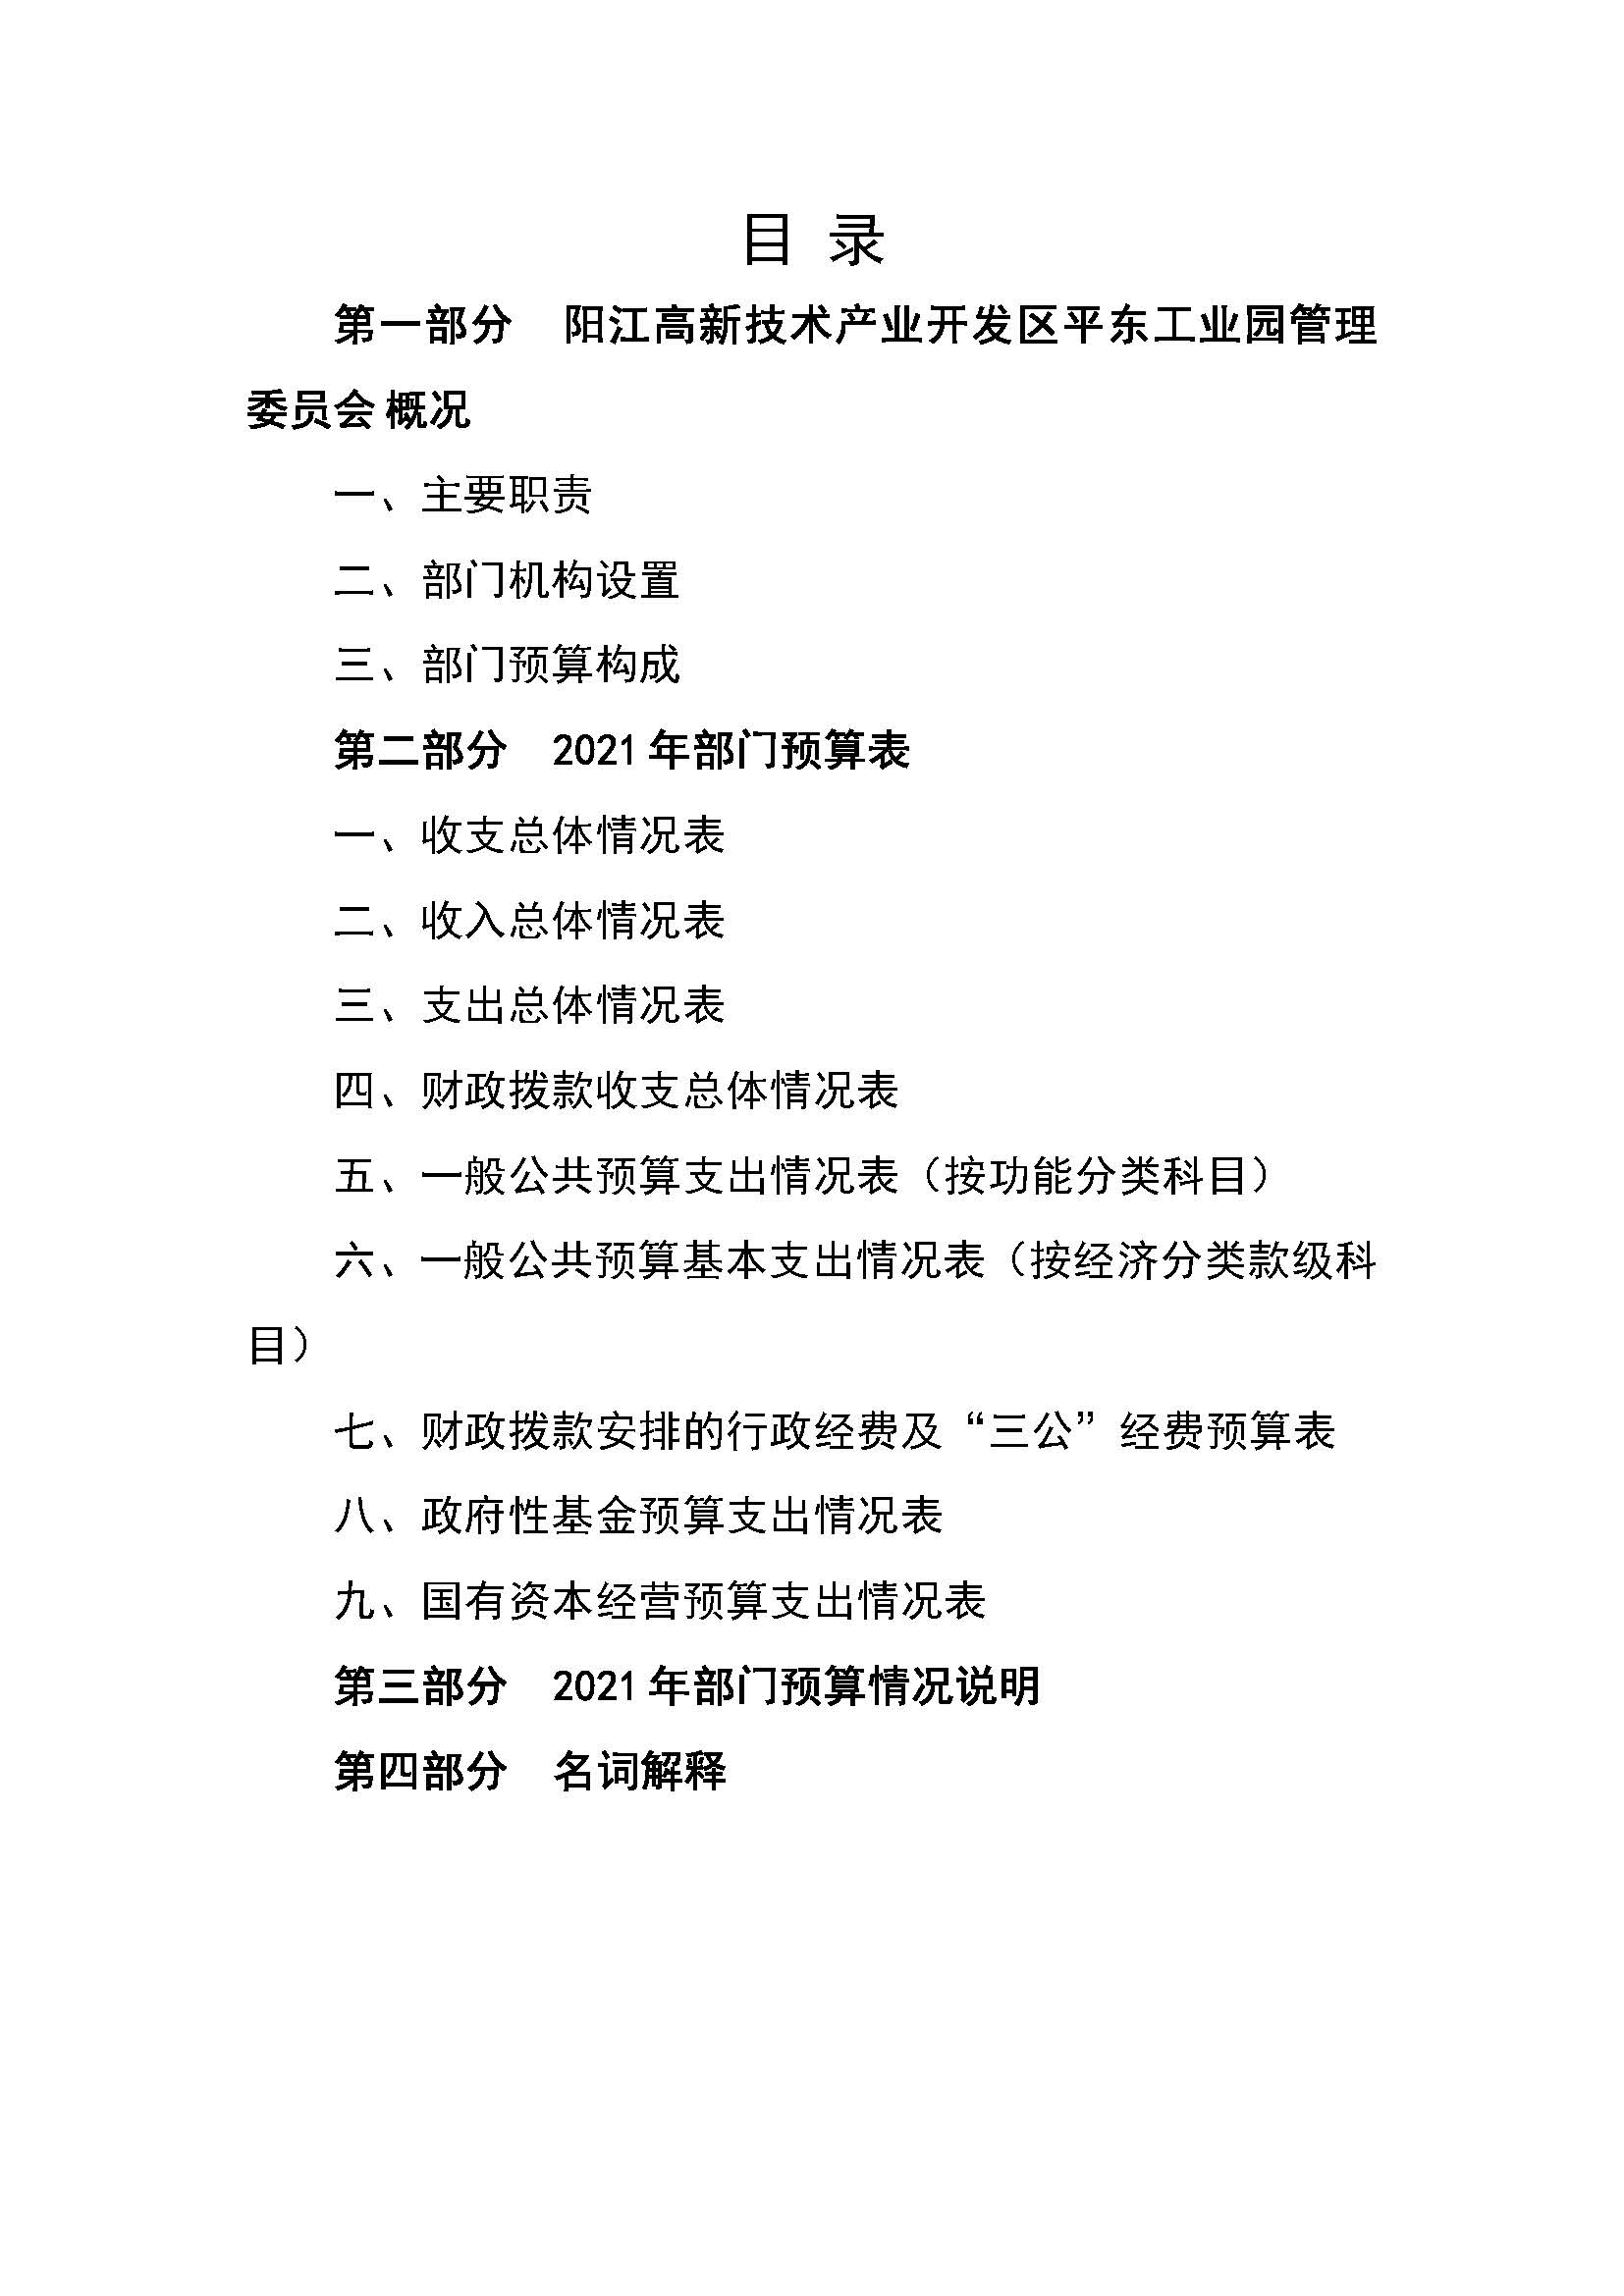 2021 年阳江高新技术产业开发区管理委员会平东工业园部门预算_页面_02.jpg